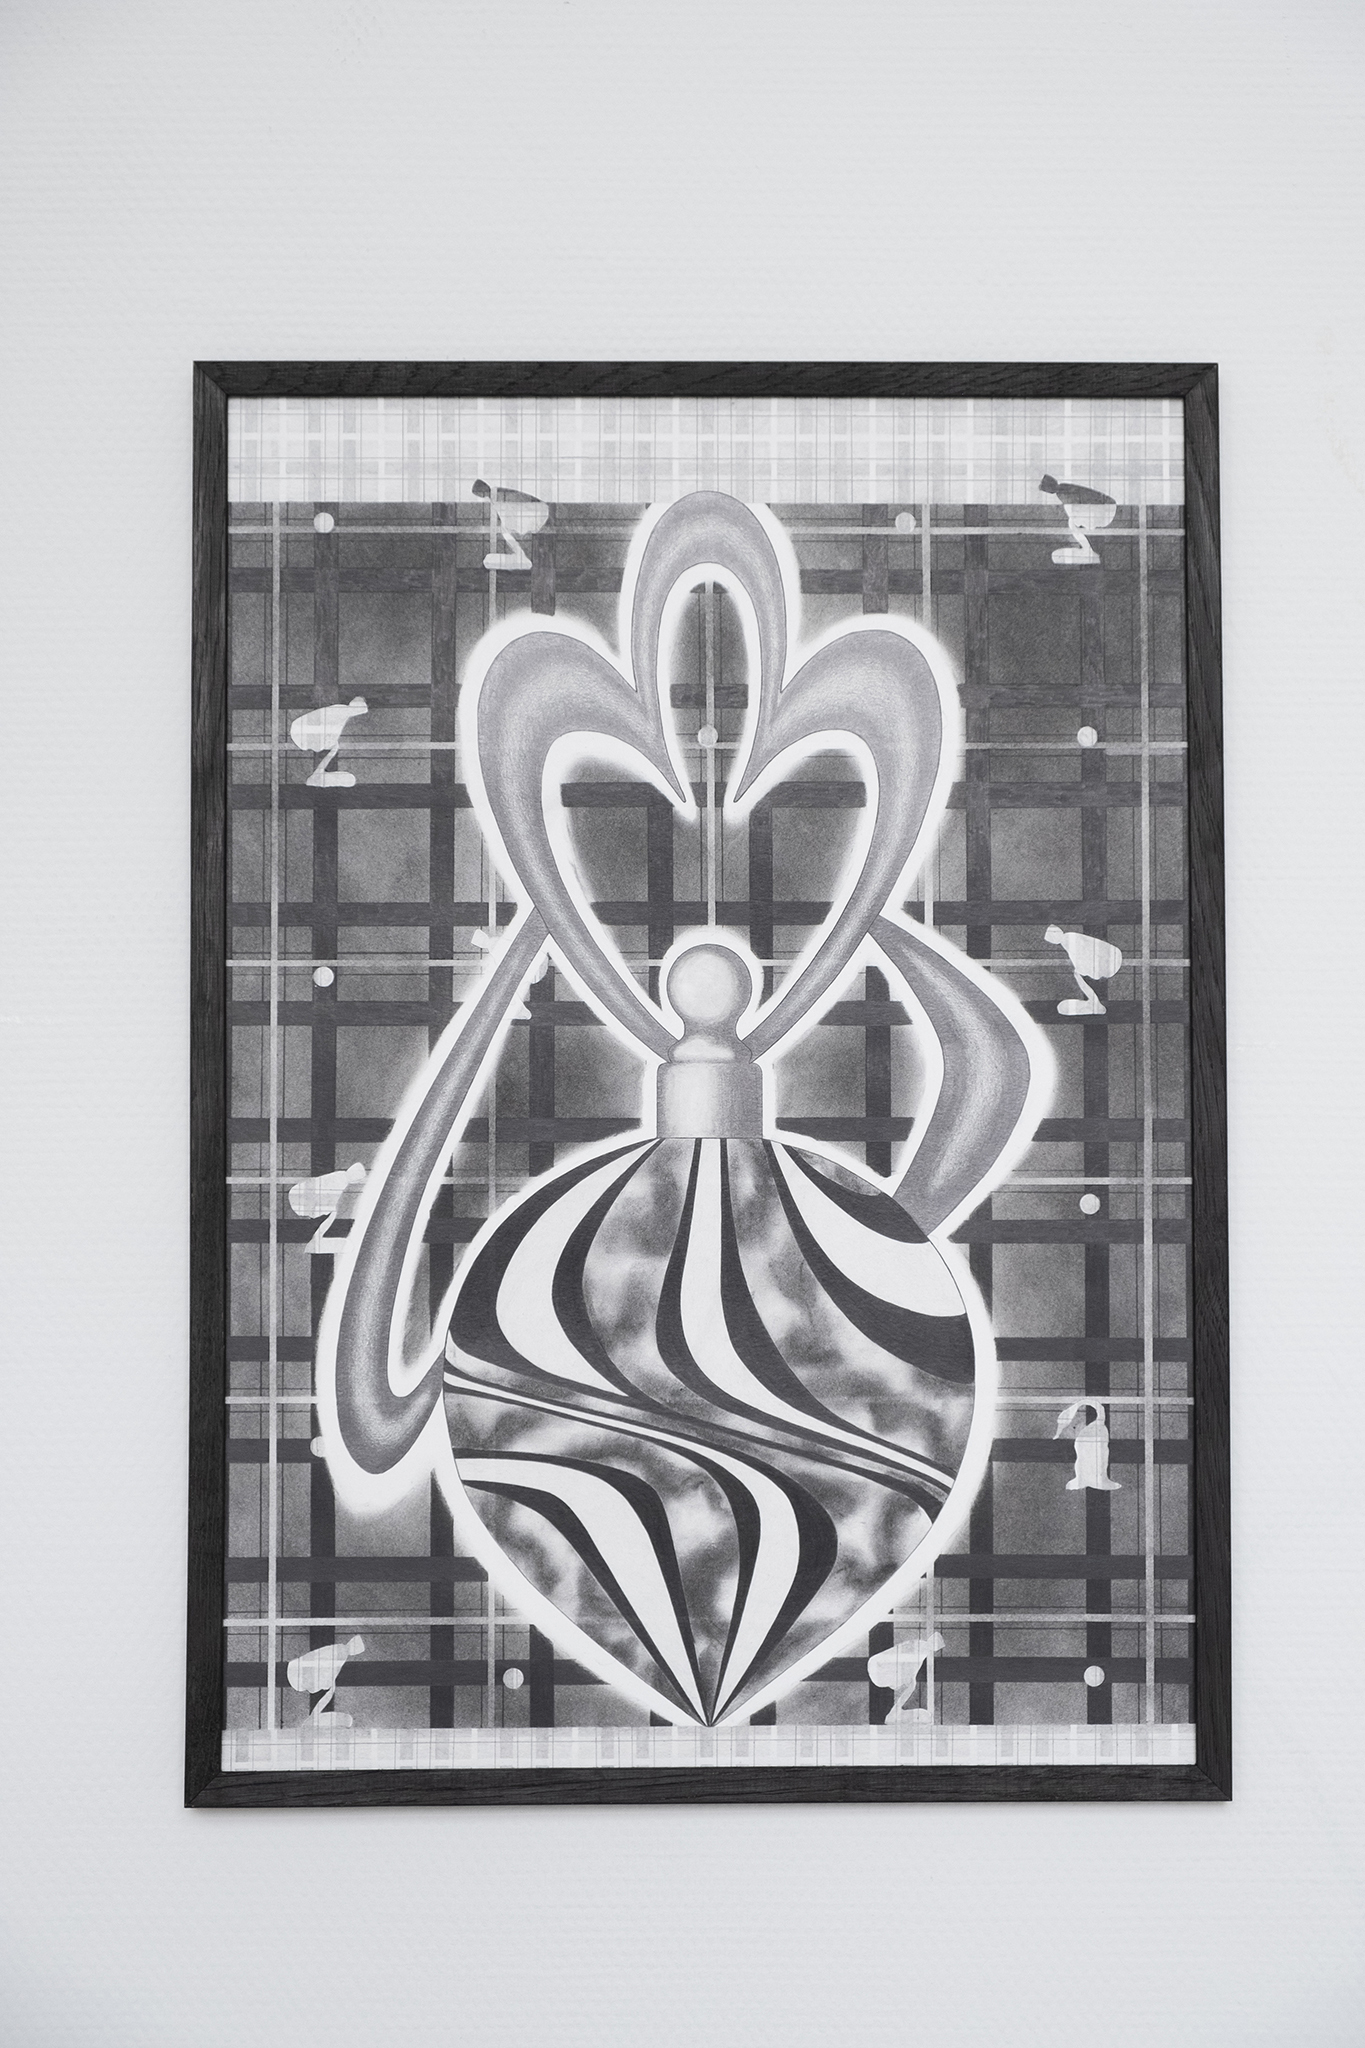 Audrey Aumegeas, Berlingotta, graphite pencils and charcoals on Canson paper, 58 x 42 cm, 2022